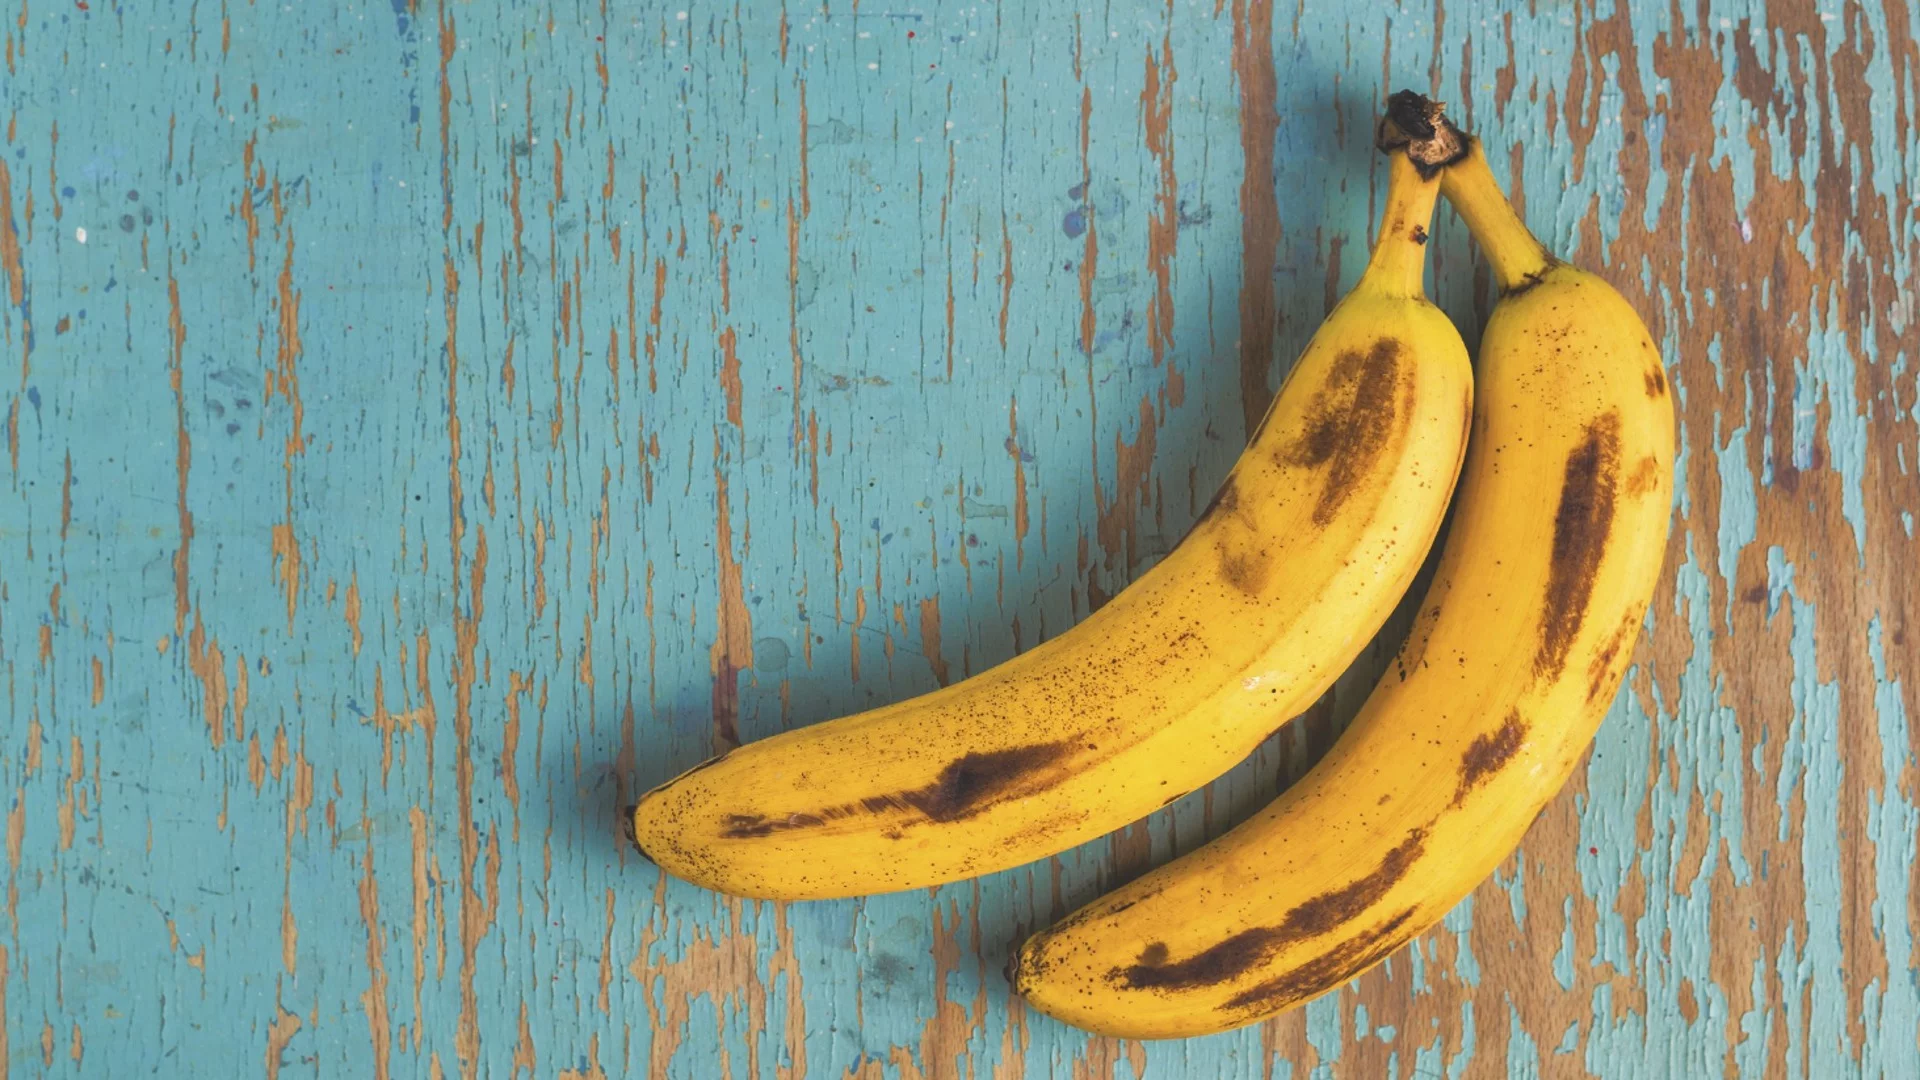 Полезни ли са презрелите банани с тъмни петна?